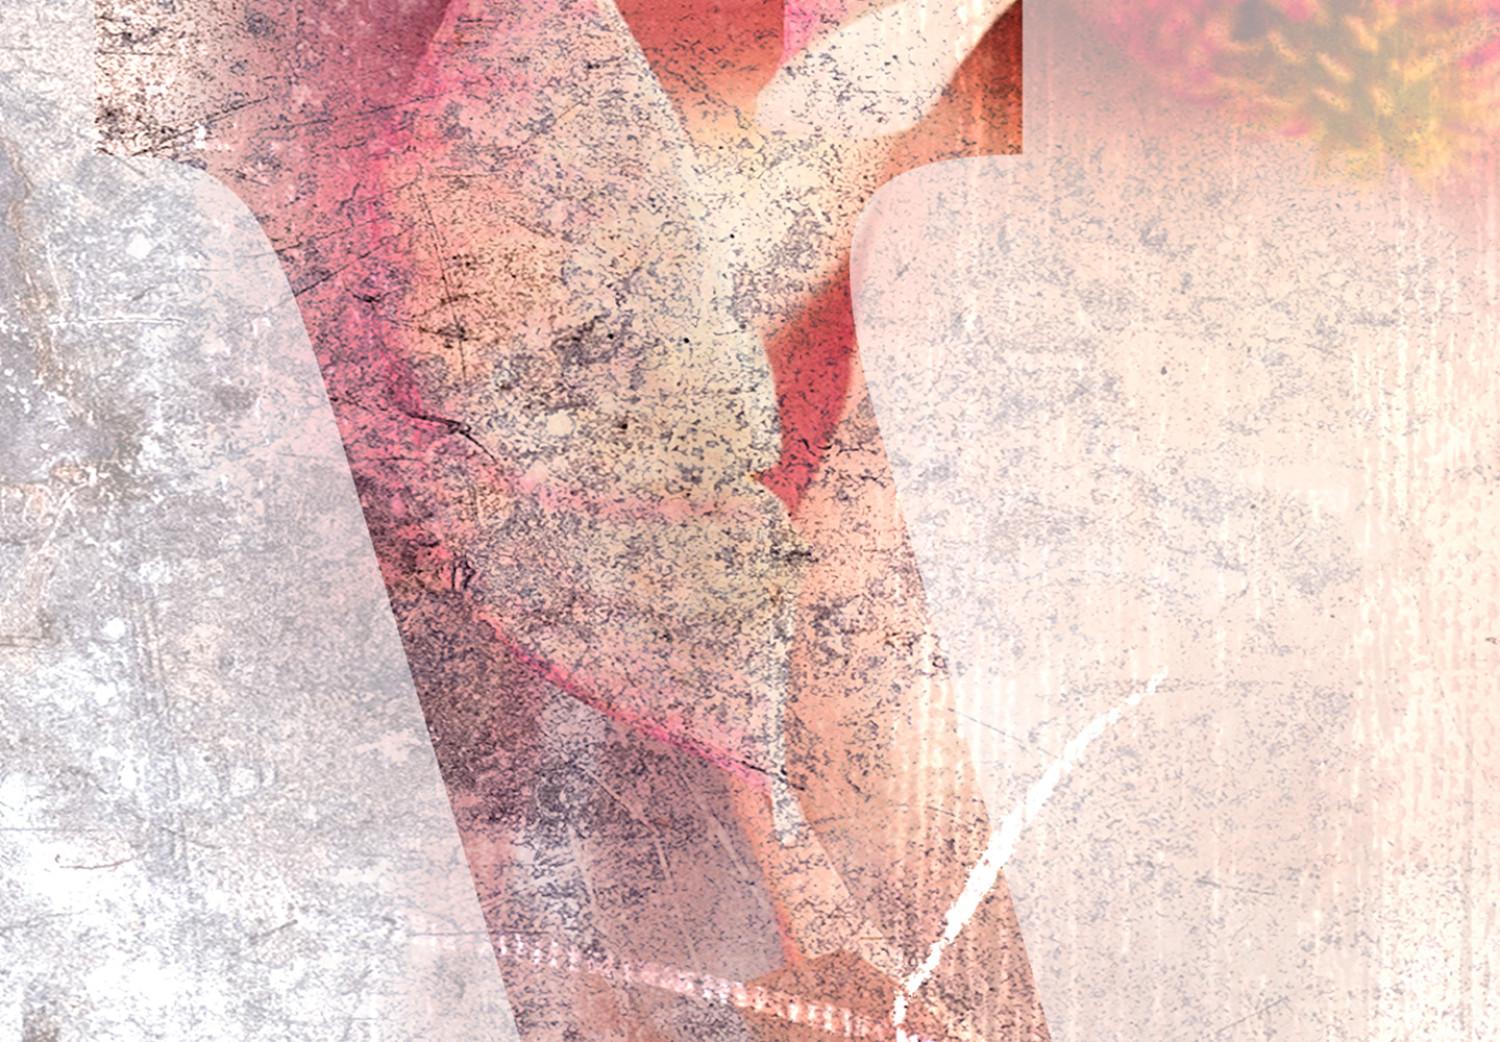 Set de poster Amor magnolia - texto colorido en inglés sobre fondo de cemento